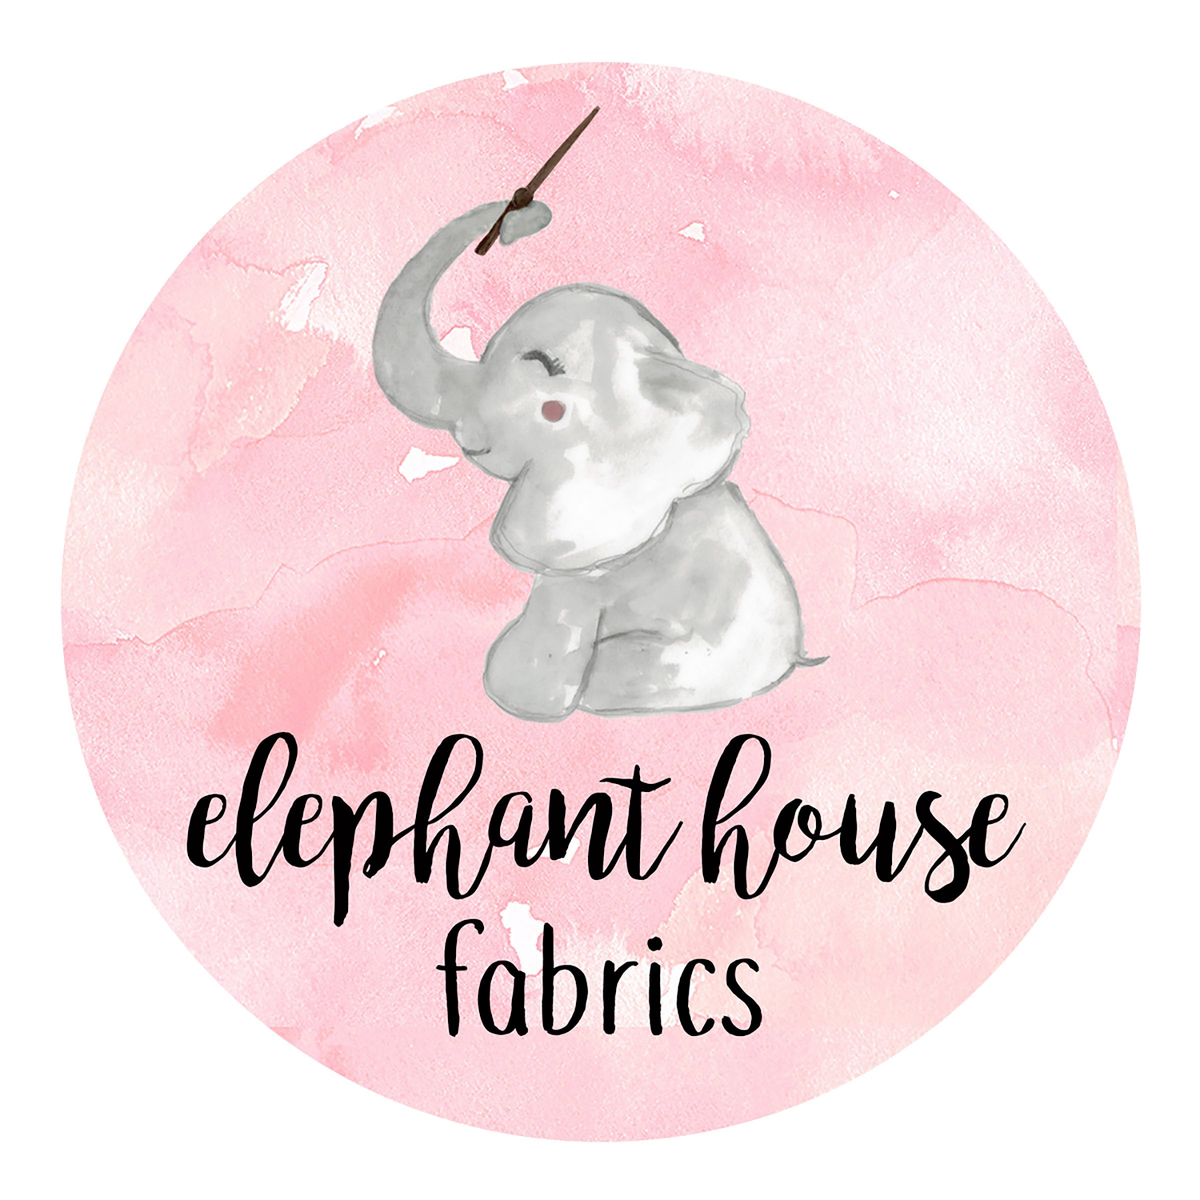 Welcome to Elephant House Fabrics!